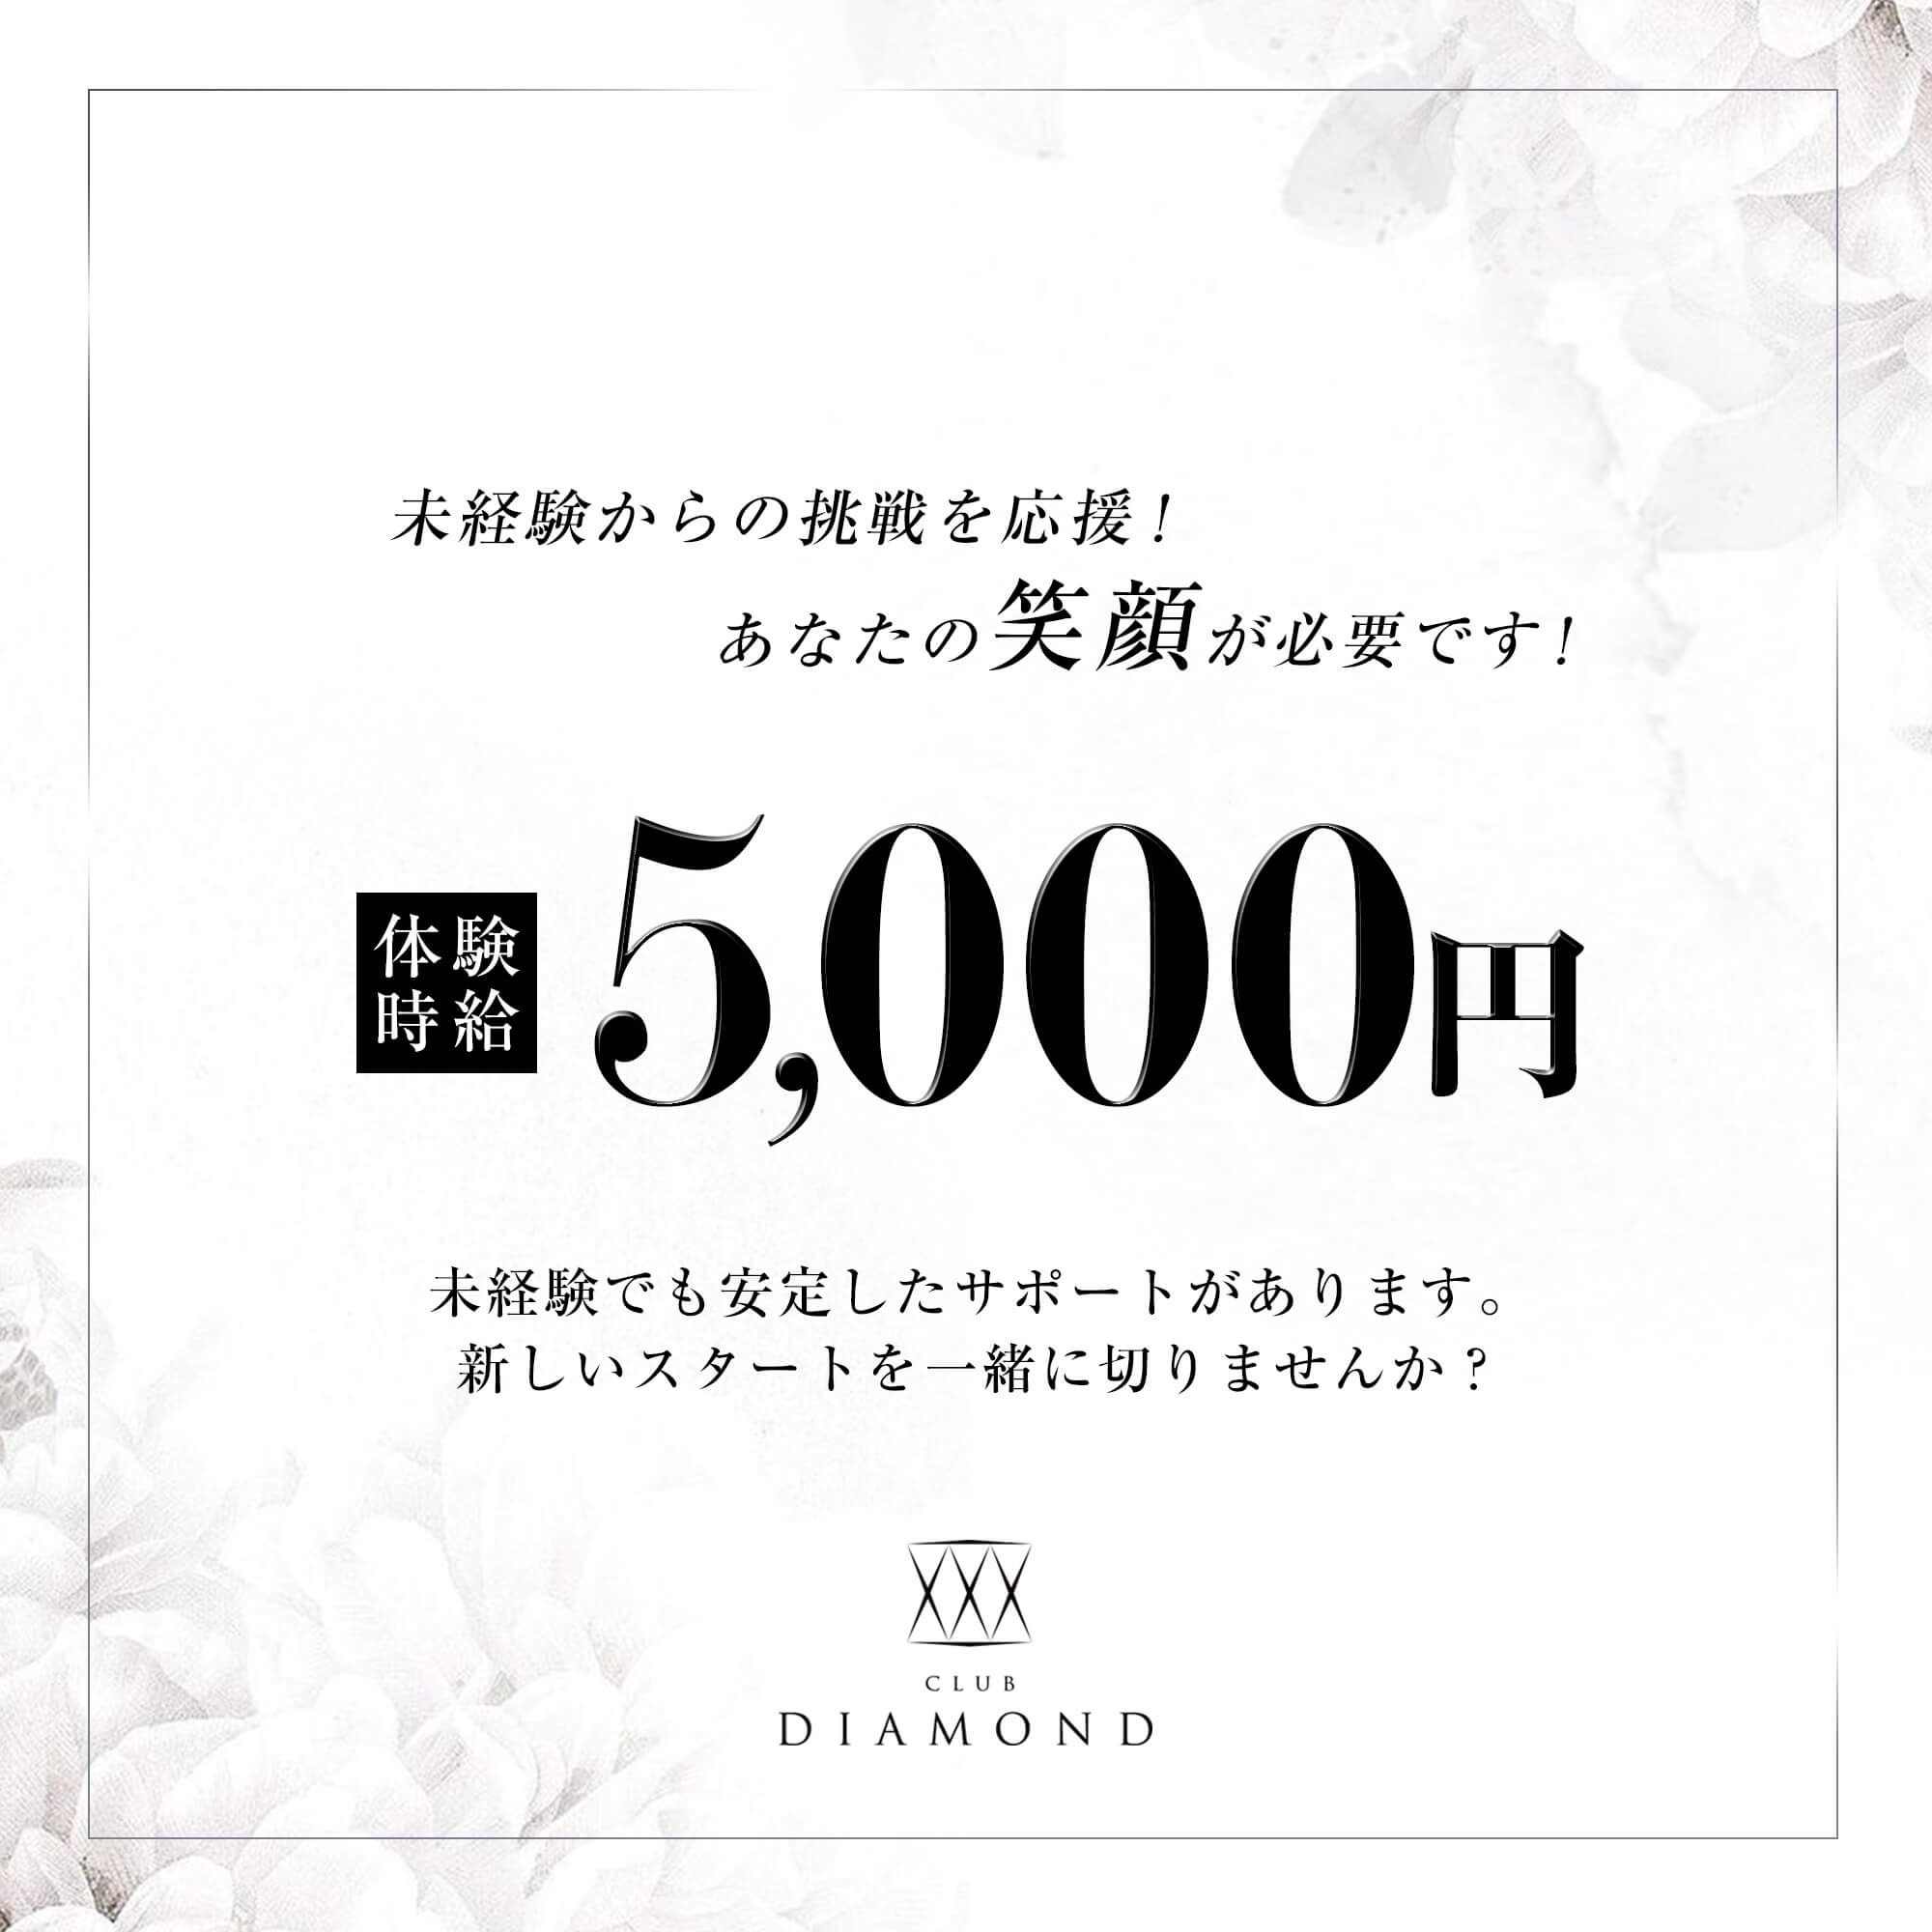 高岡 キャバクラ「CLUB DIAMOND」ショップニュース